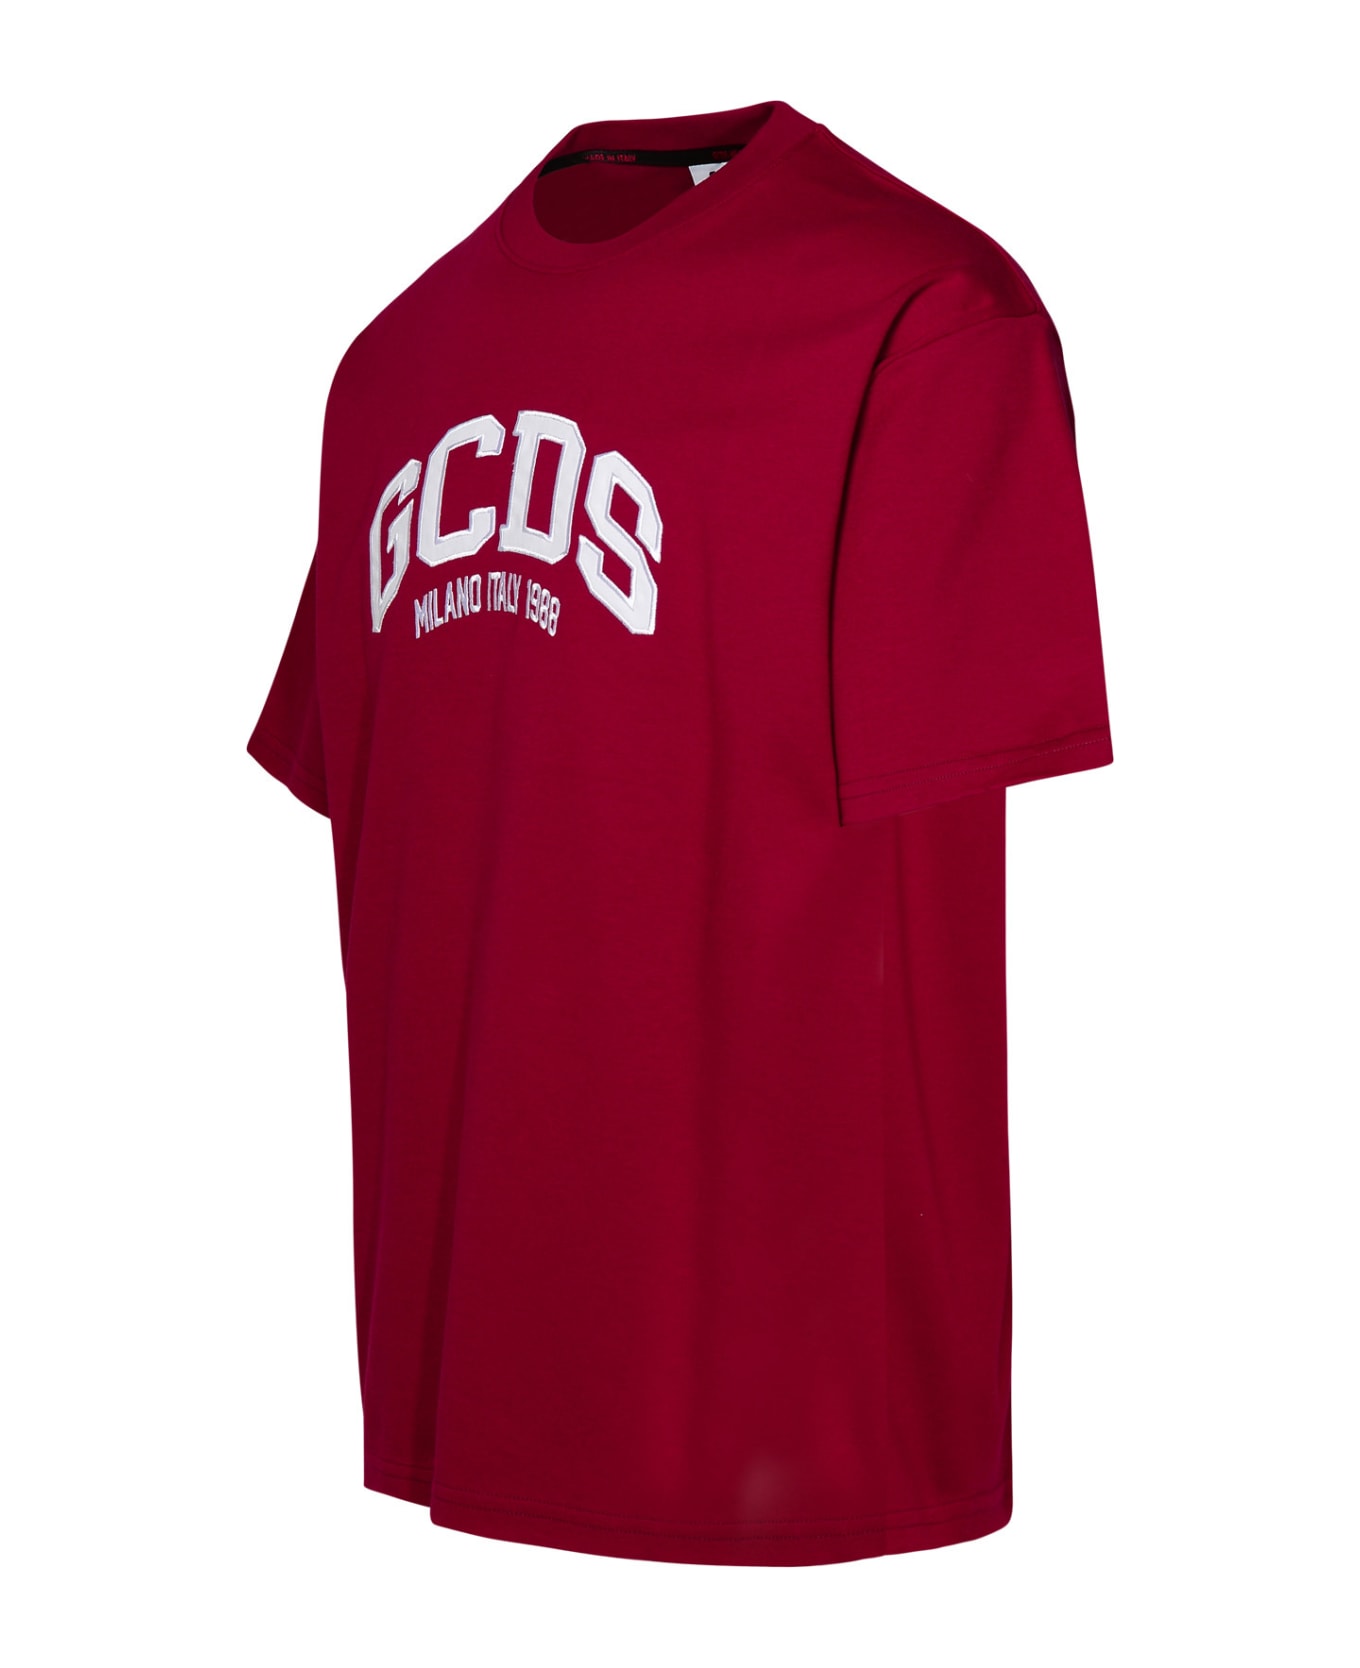 GCDS Burgundy Cotton T-shirt - Bordeaux